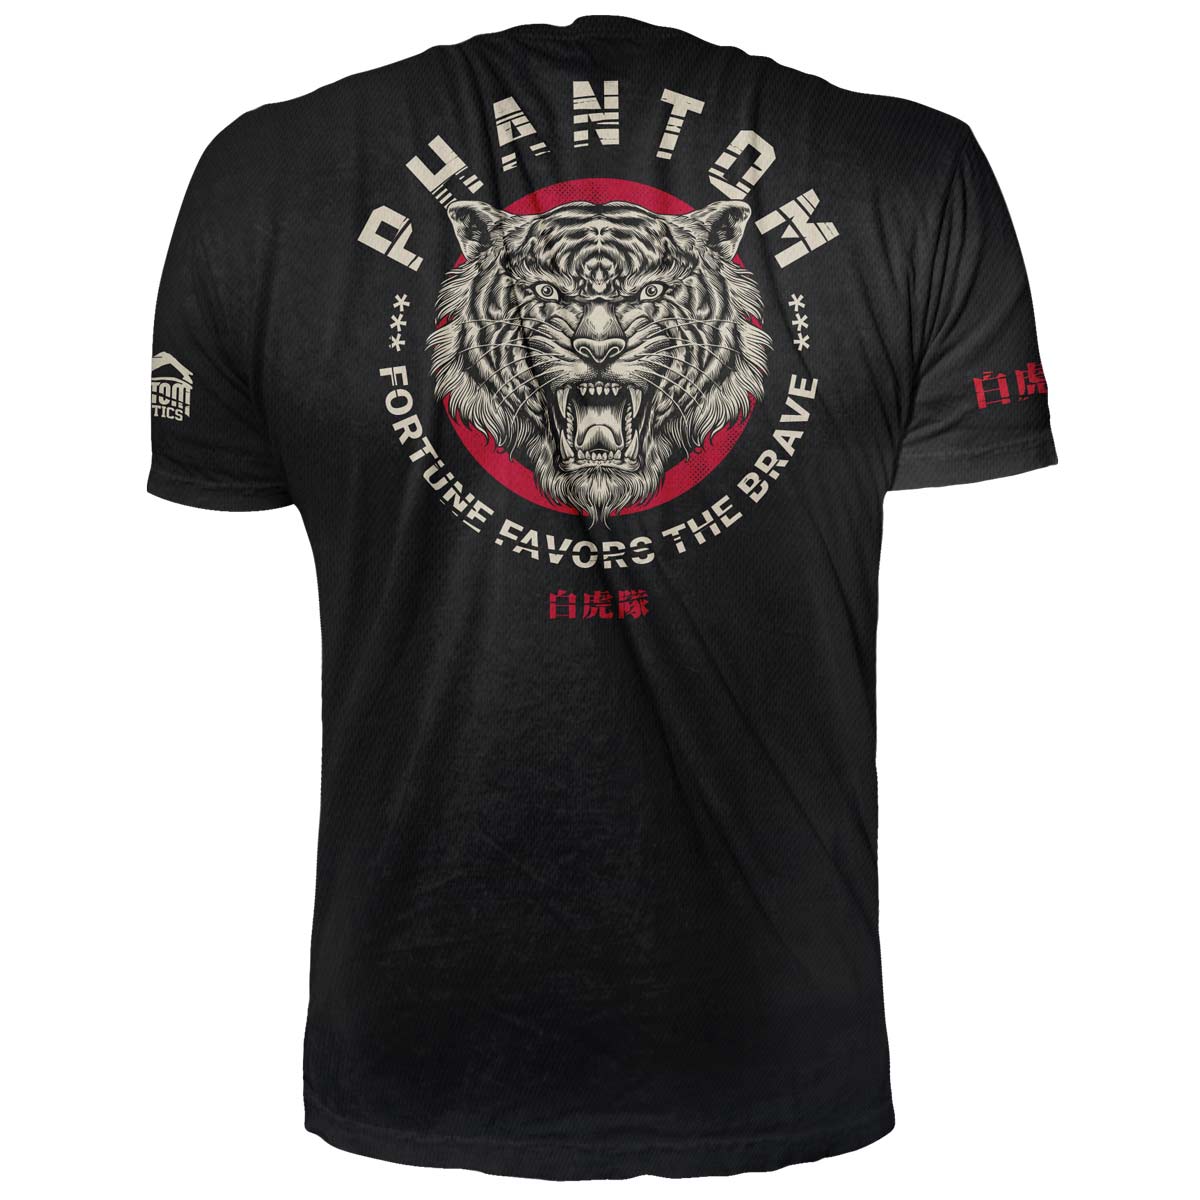 Das Phantom EVO Trainingsshirt für deinen Kampfsport. Atmungsaktiv und funktional. Ideal für MMA, BJJ oder Muay Thai. Im limitierten Tiger Unit Design.